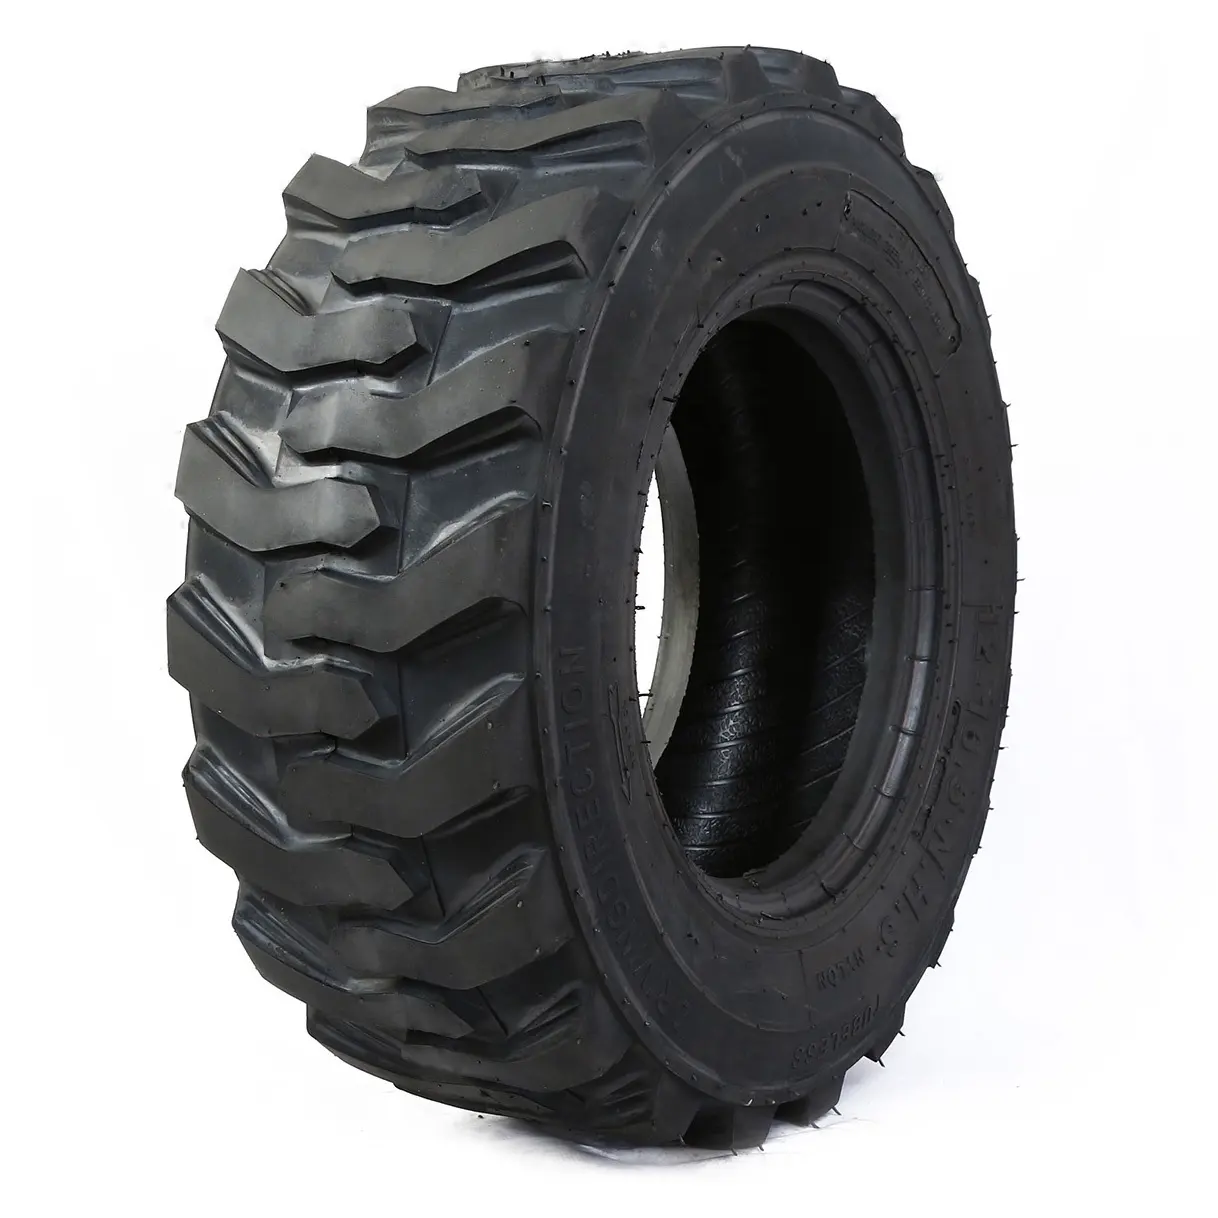 KTA 12X16.5 OTR Forklift Loader Excavator Tube Tires Bobcat Tyres 10-16.5 12-16.5 14-17.5 Solid Skid Steer Tires